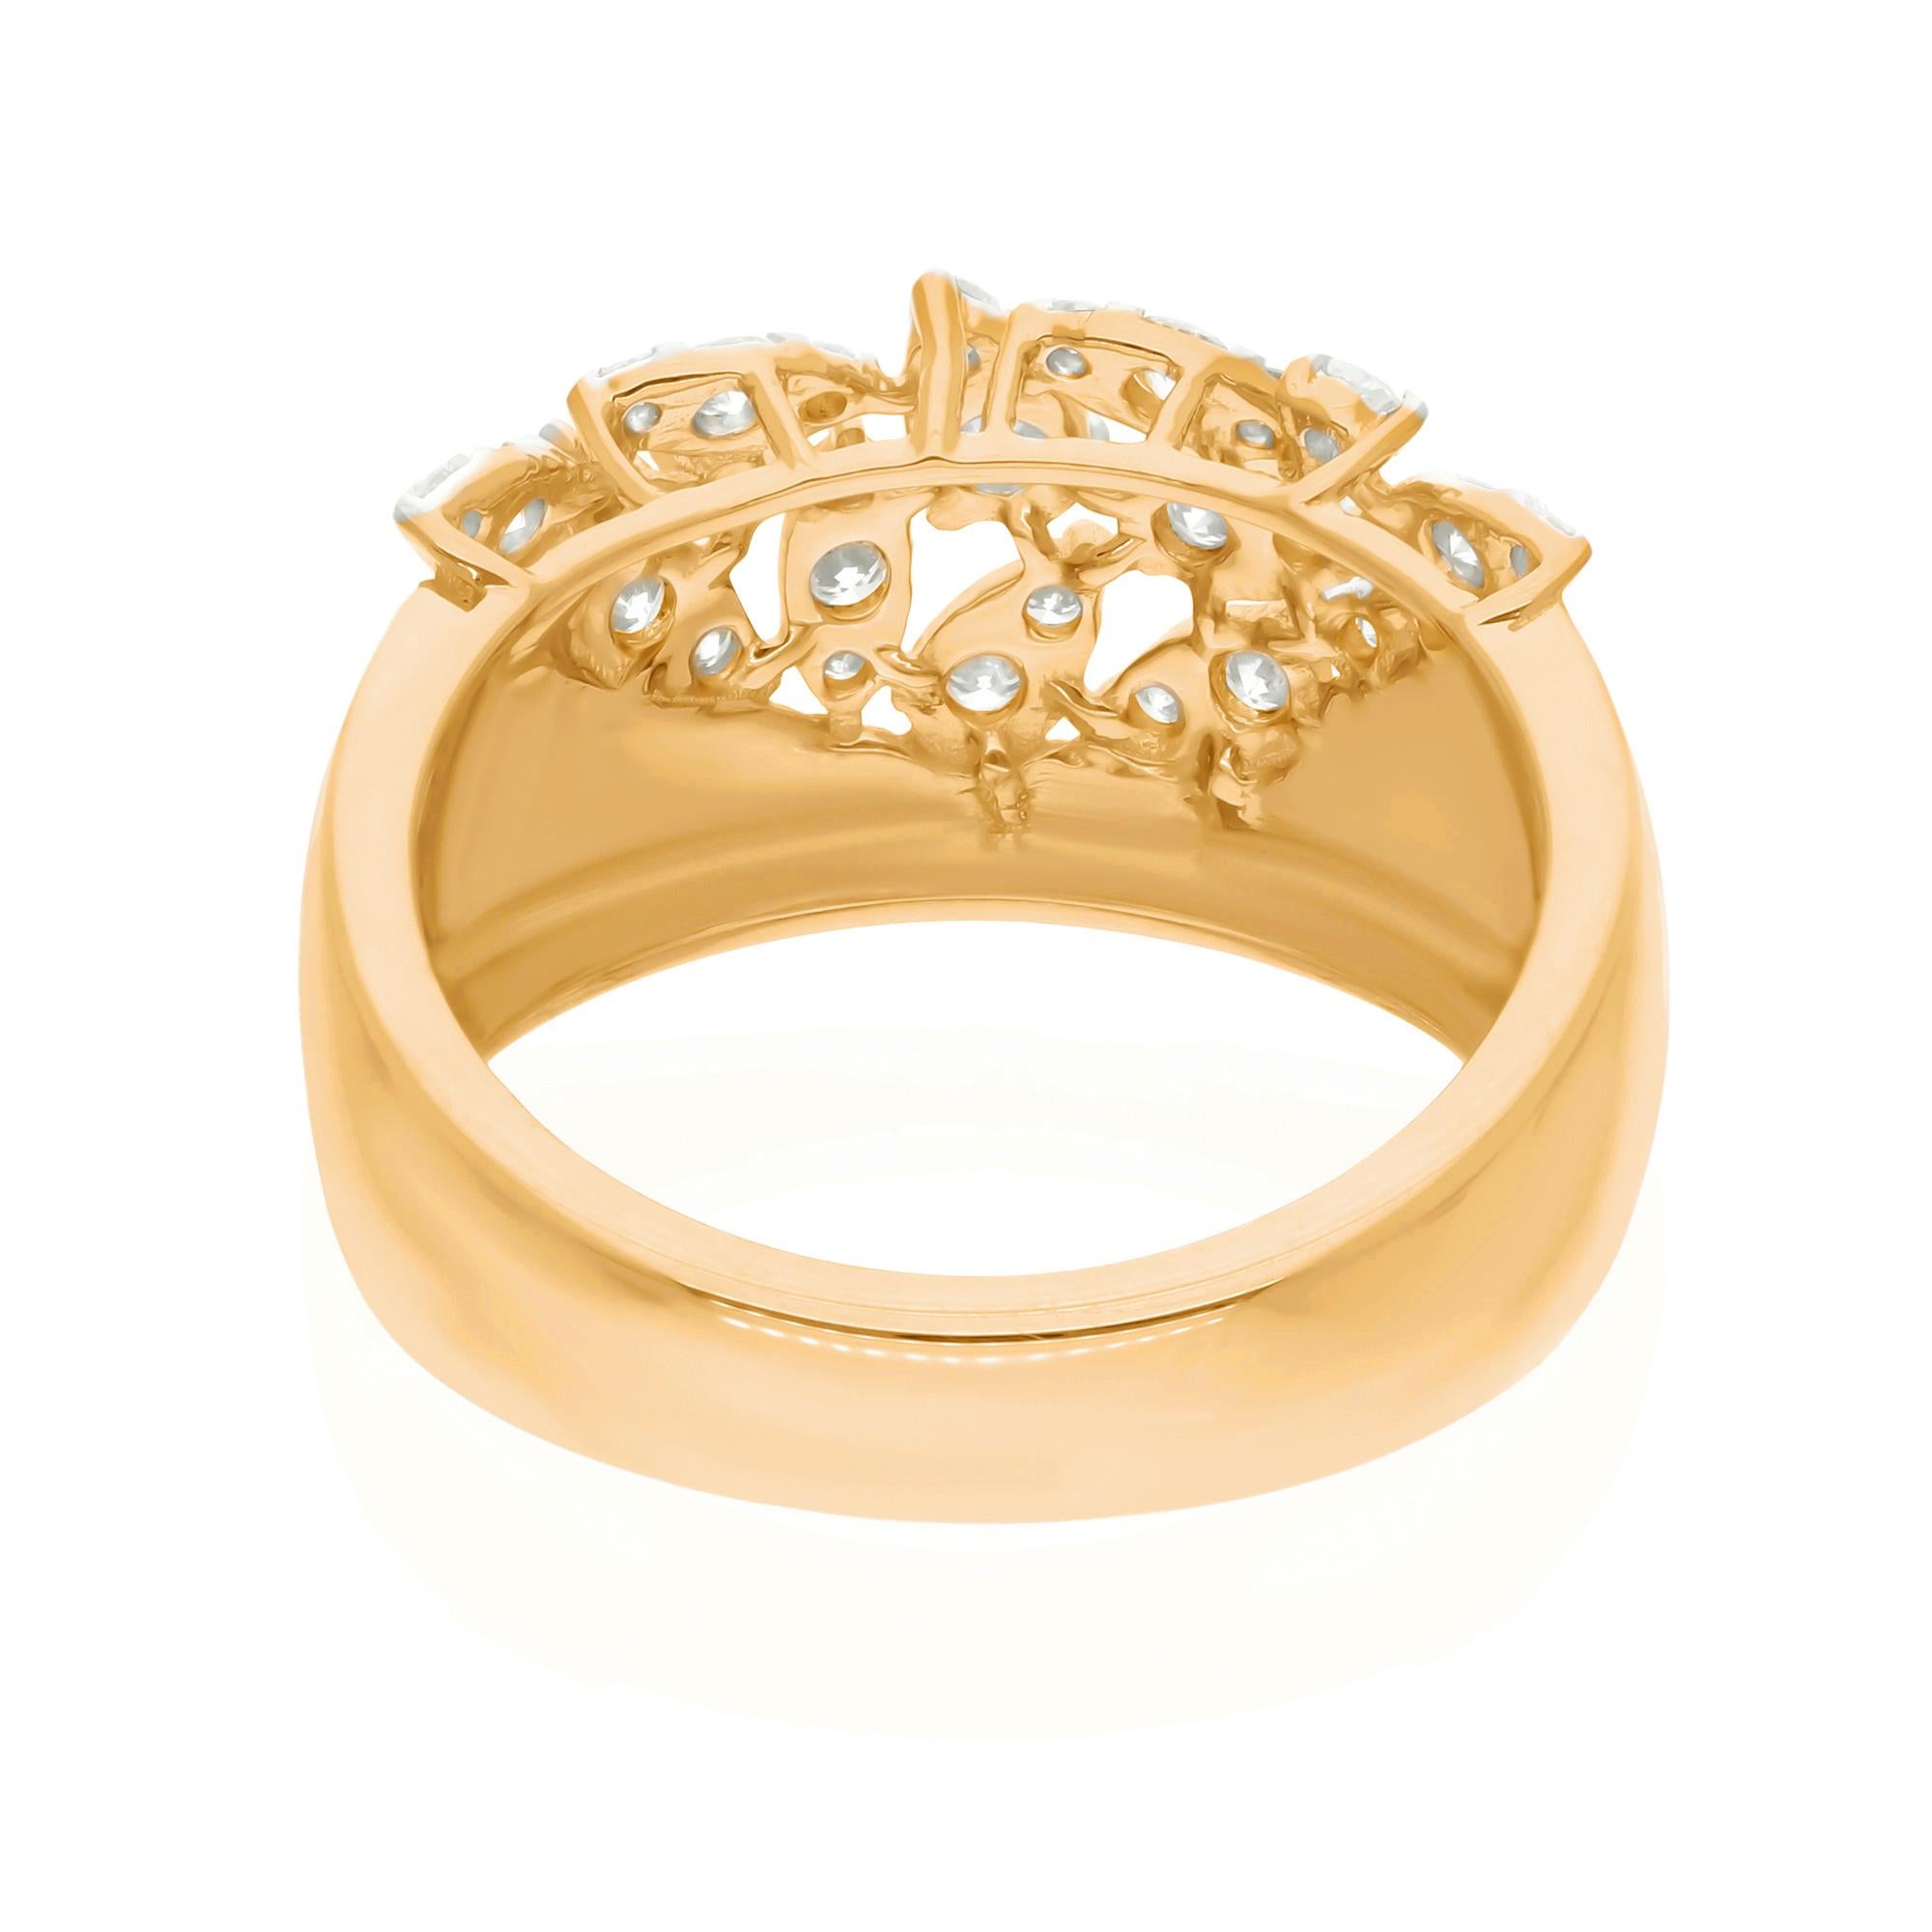 Eingefasst in ein glänzendes Band aus 14 Karat Gelbgold, strahlt dieser Ring Wärme und Raffinesse aus. Der satte Farbton des Goldes ergänzt den Diamanten auf wunderbare Weise und schafft einen harmonischen Kontrast, der den Gesamteindruck des